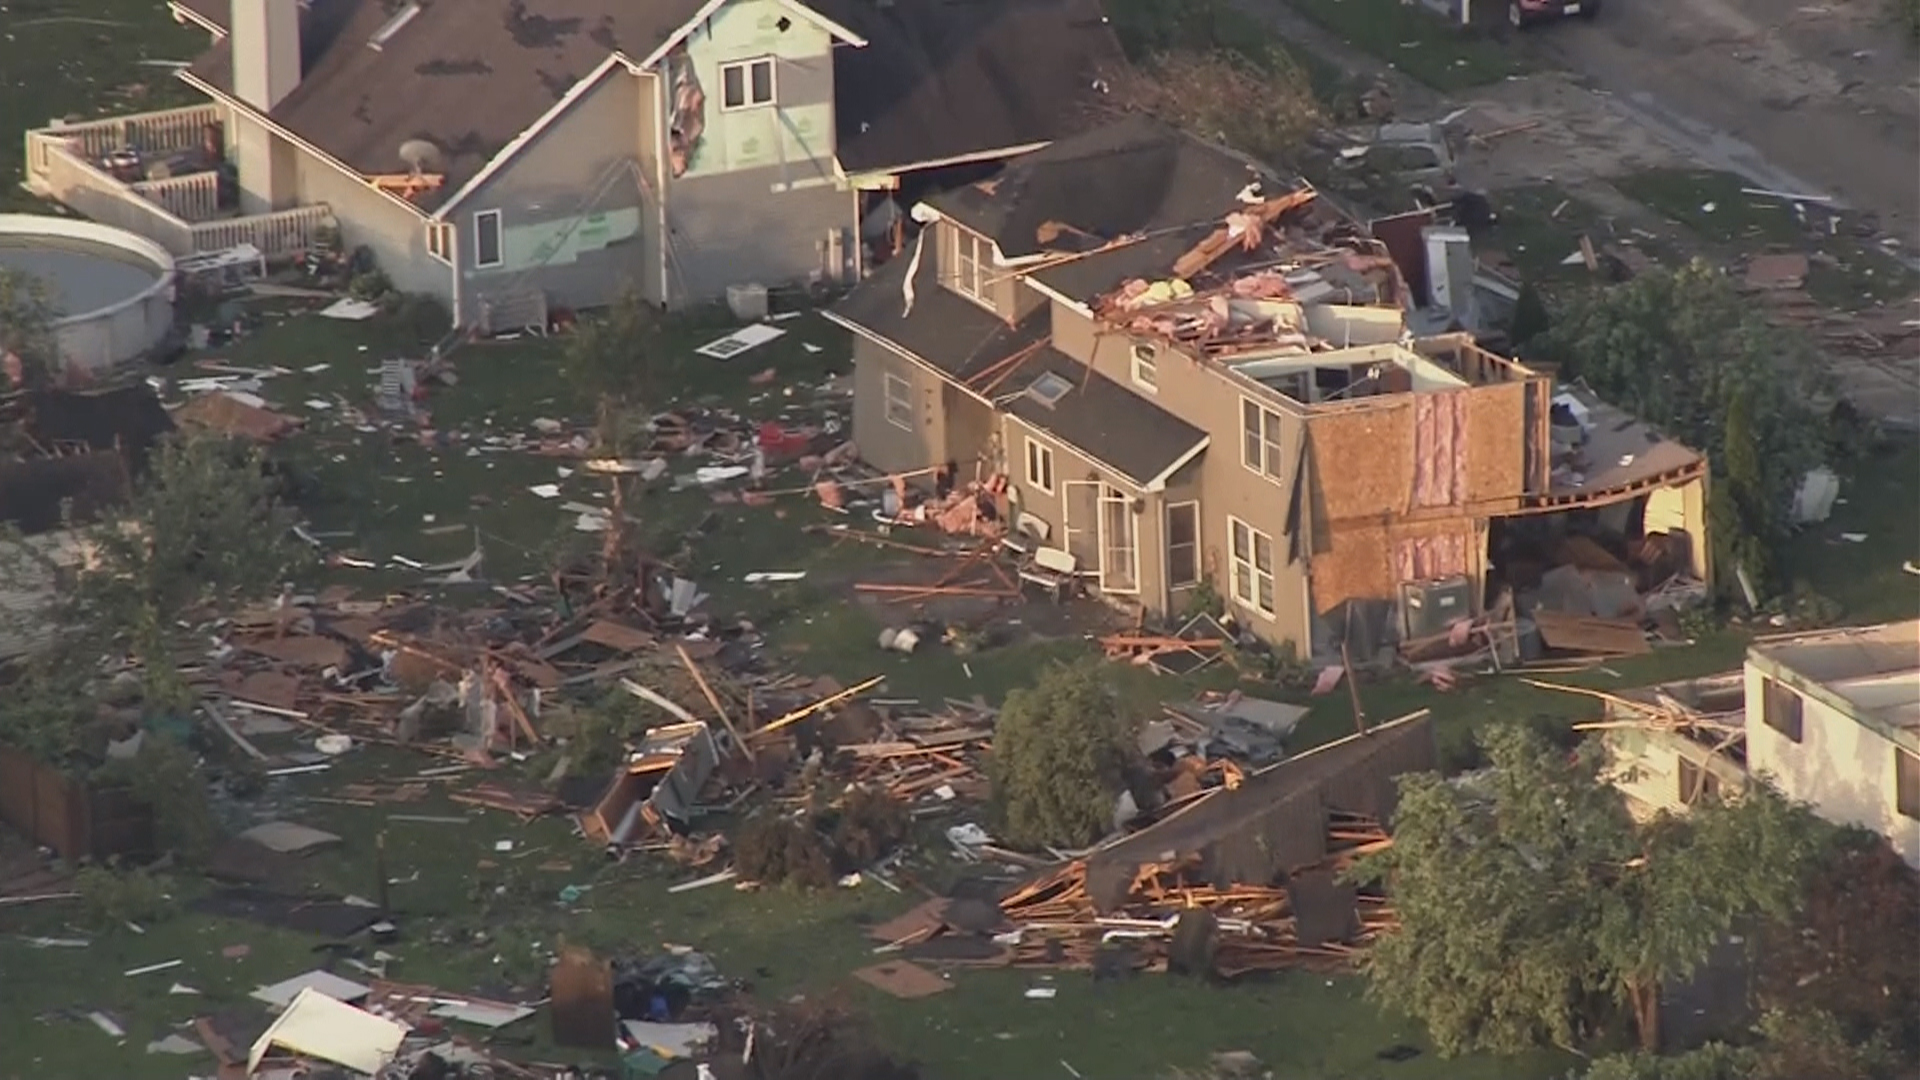 Tornadoes wreak havoc across the Midwest - TODAY.com